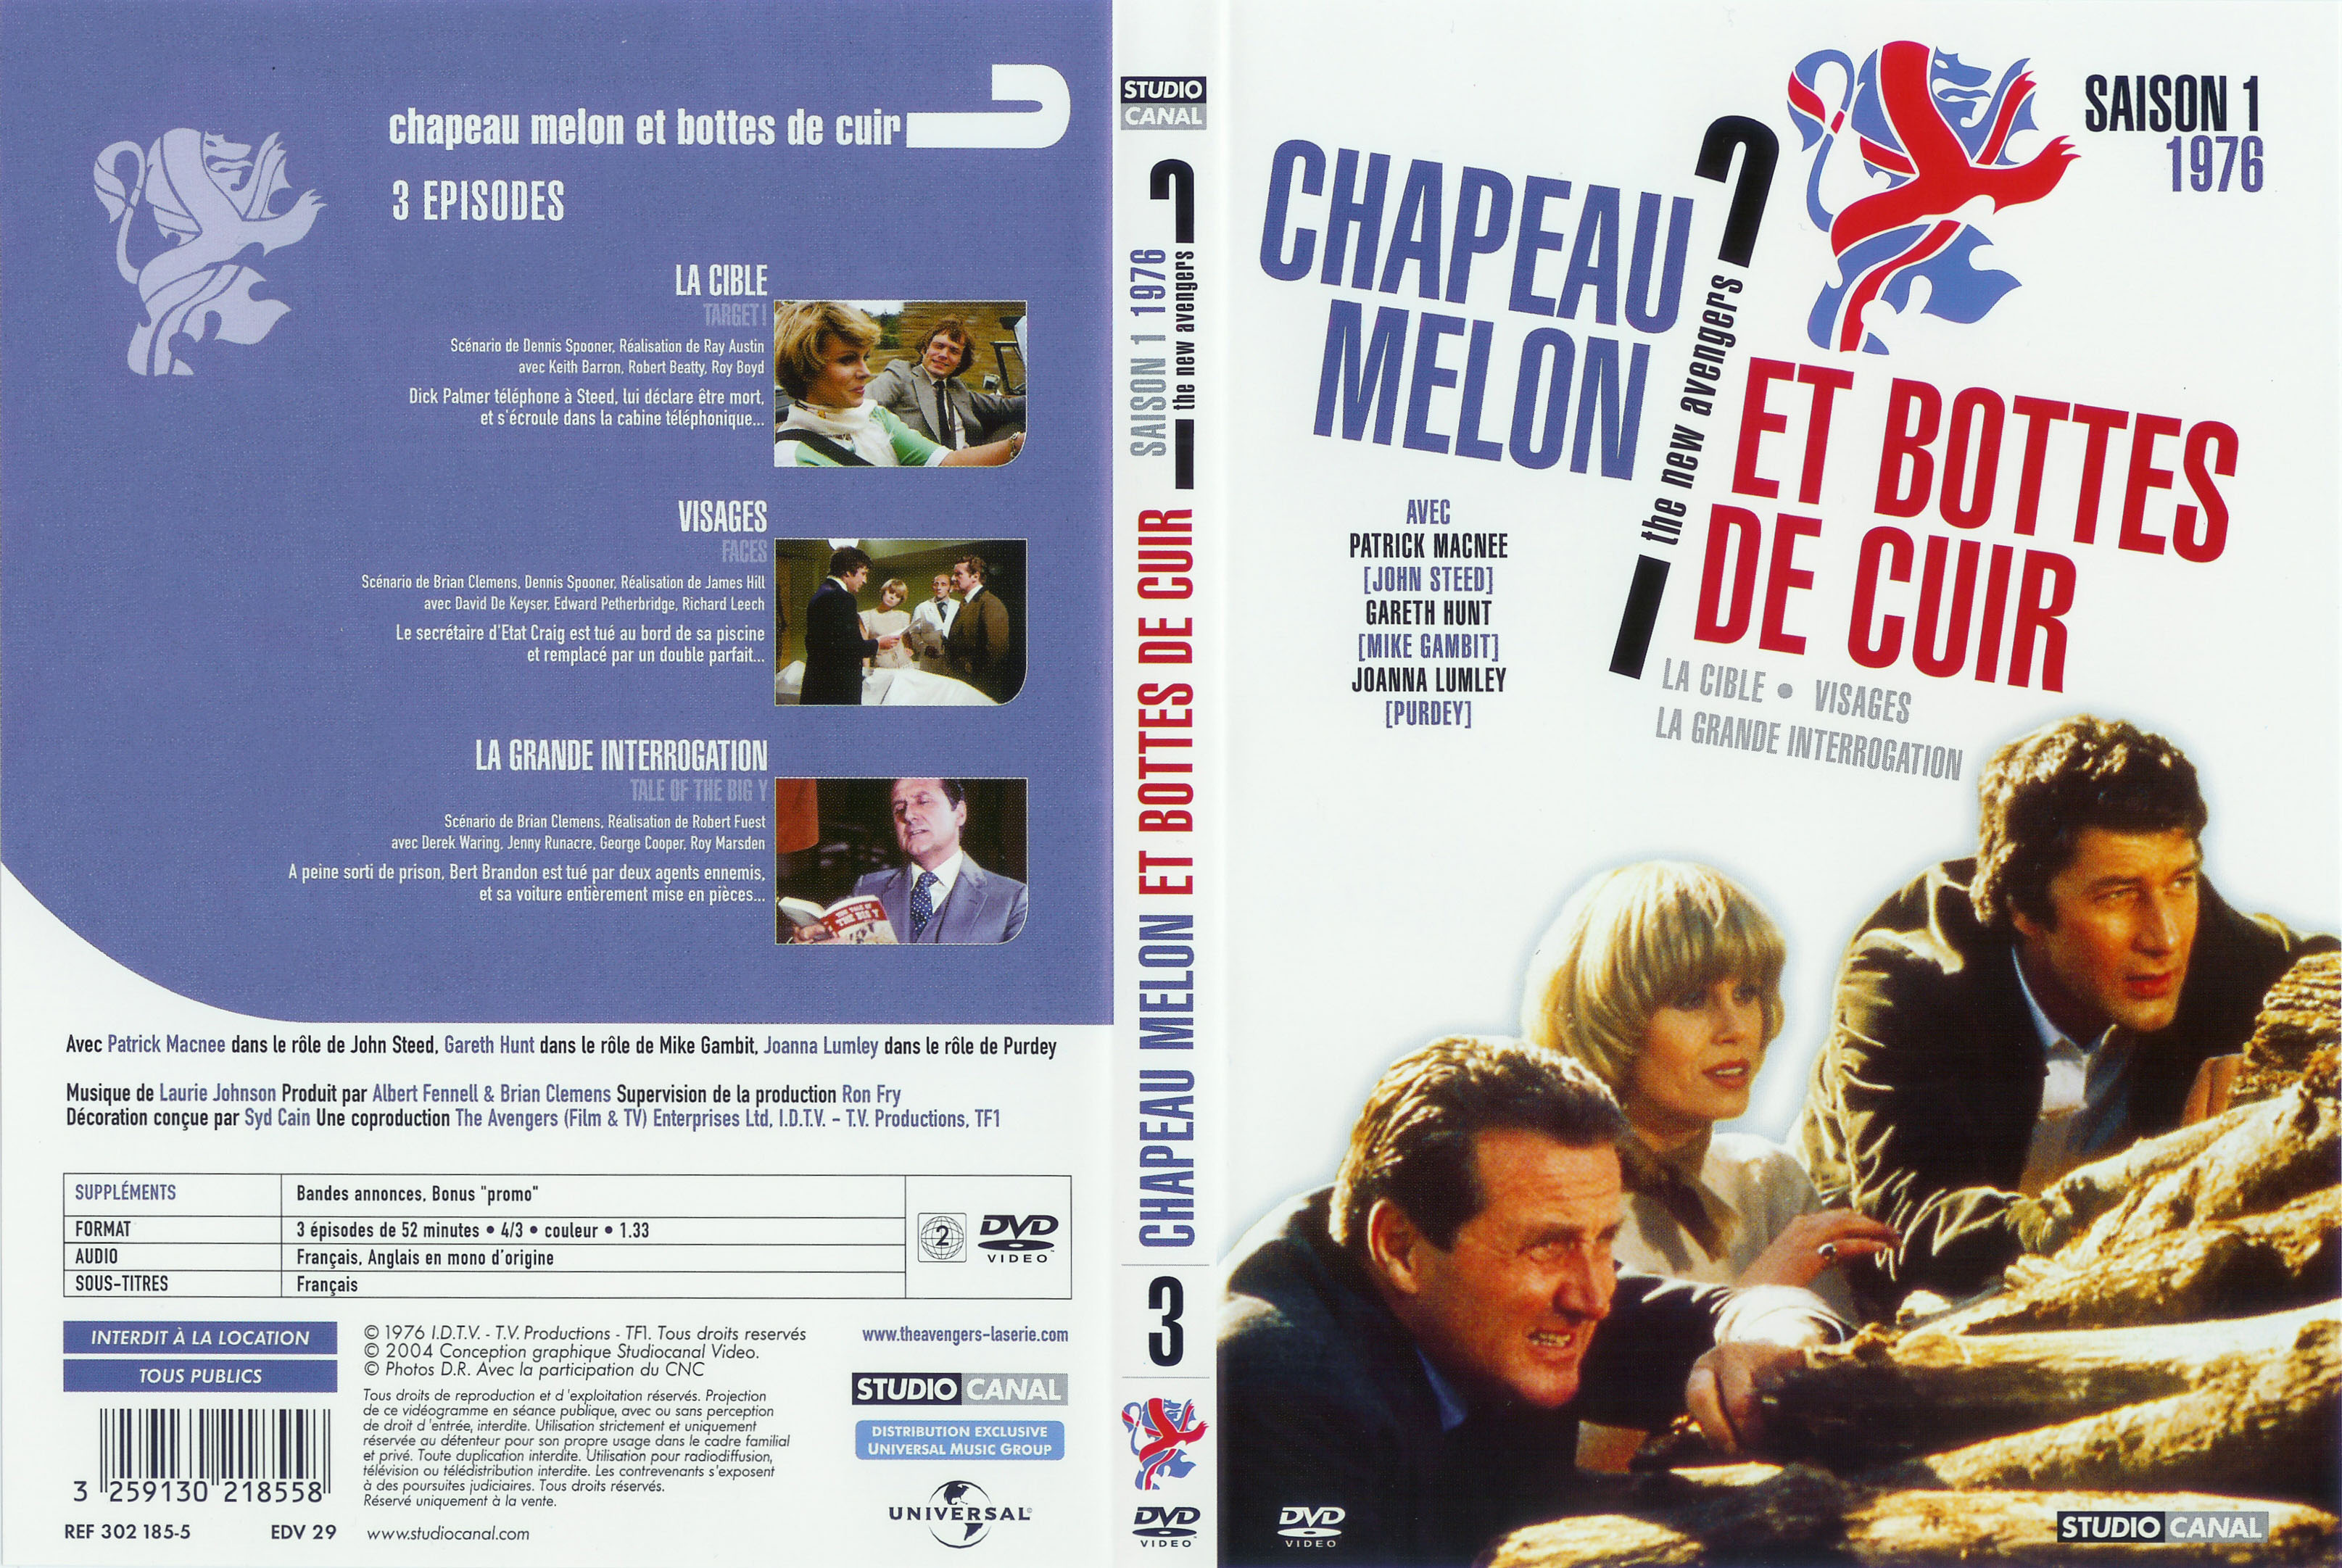 Jaquette DVD Chapeau melon et bottes de cuir 1976 vol 3